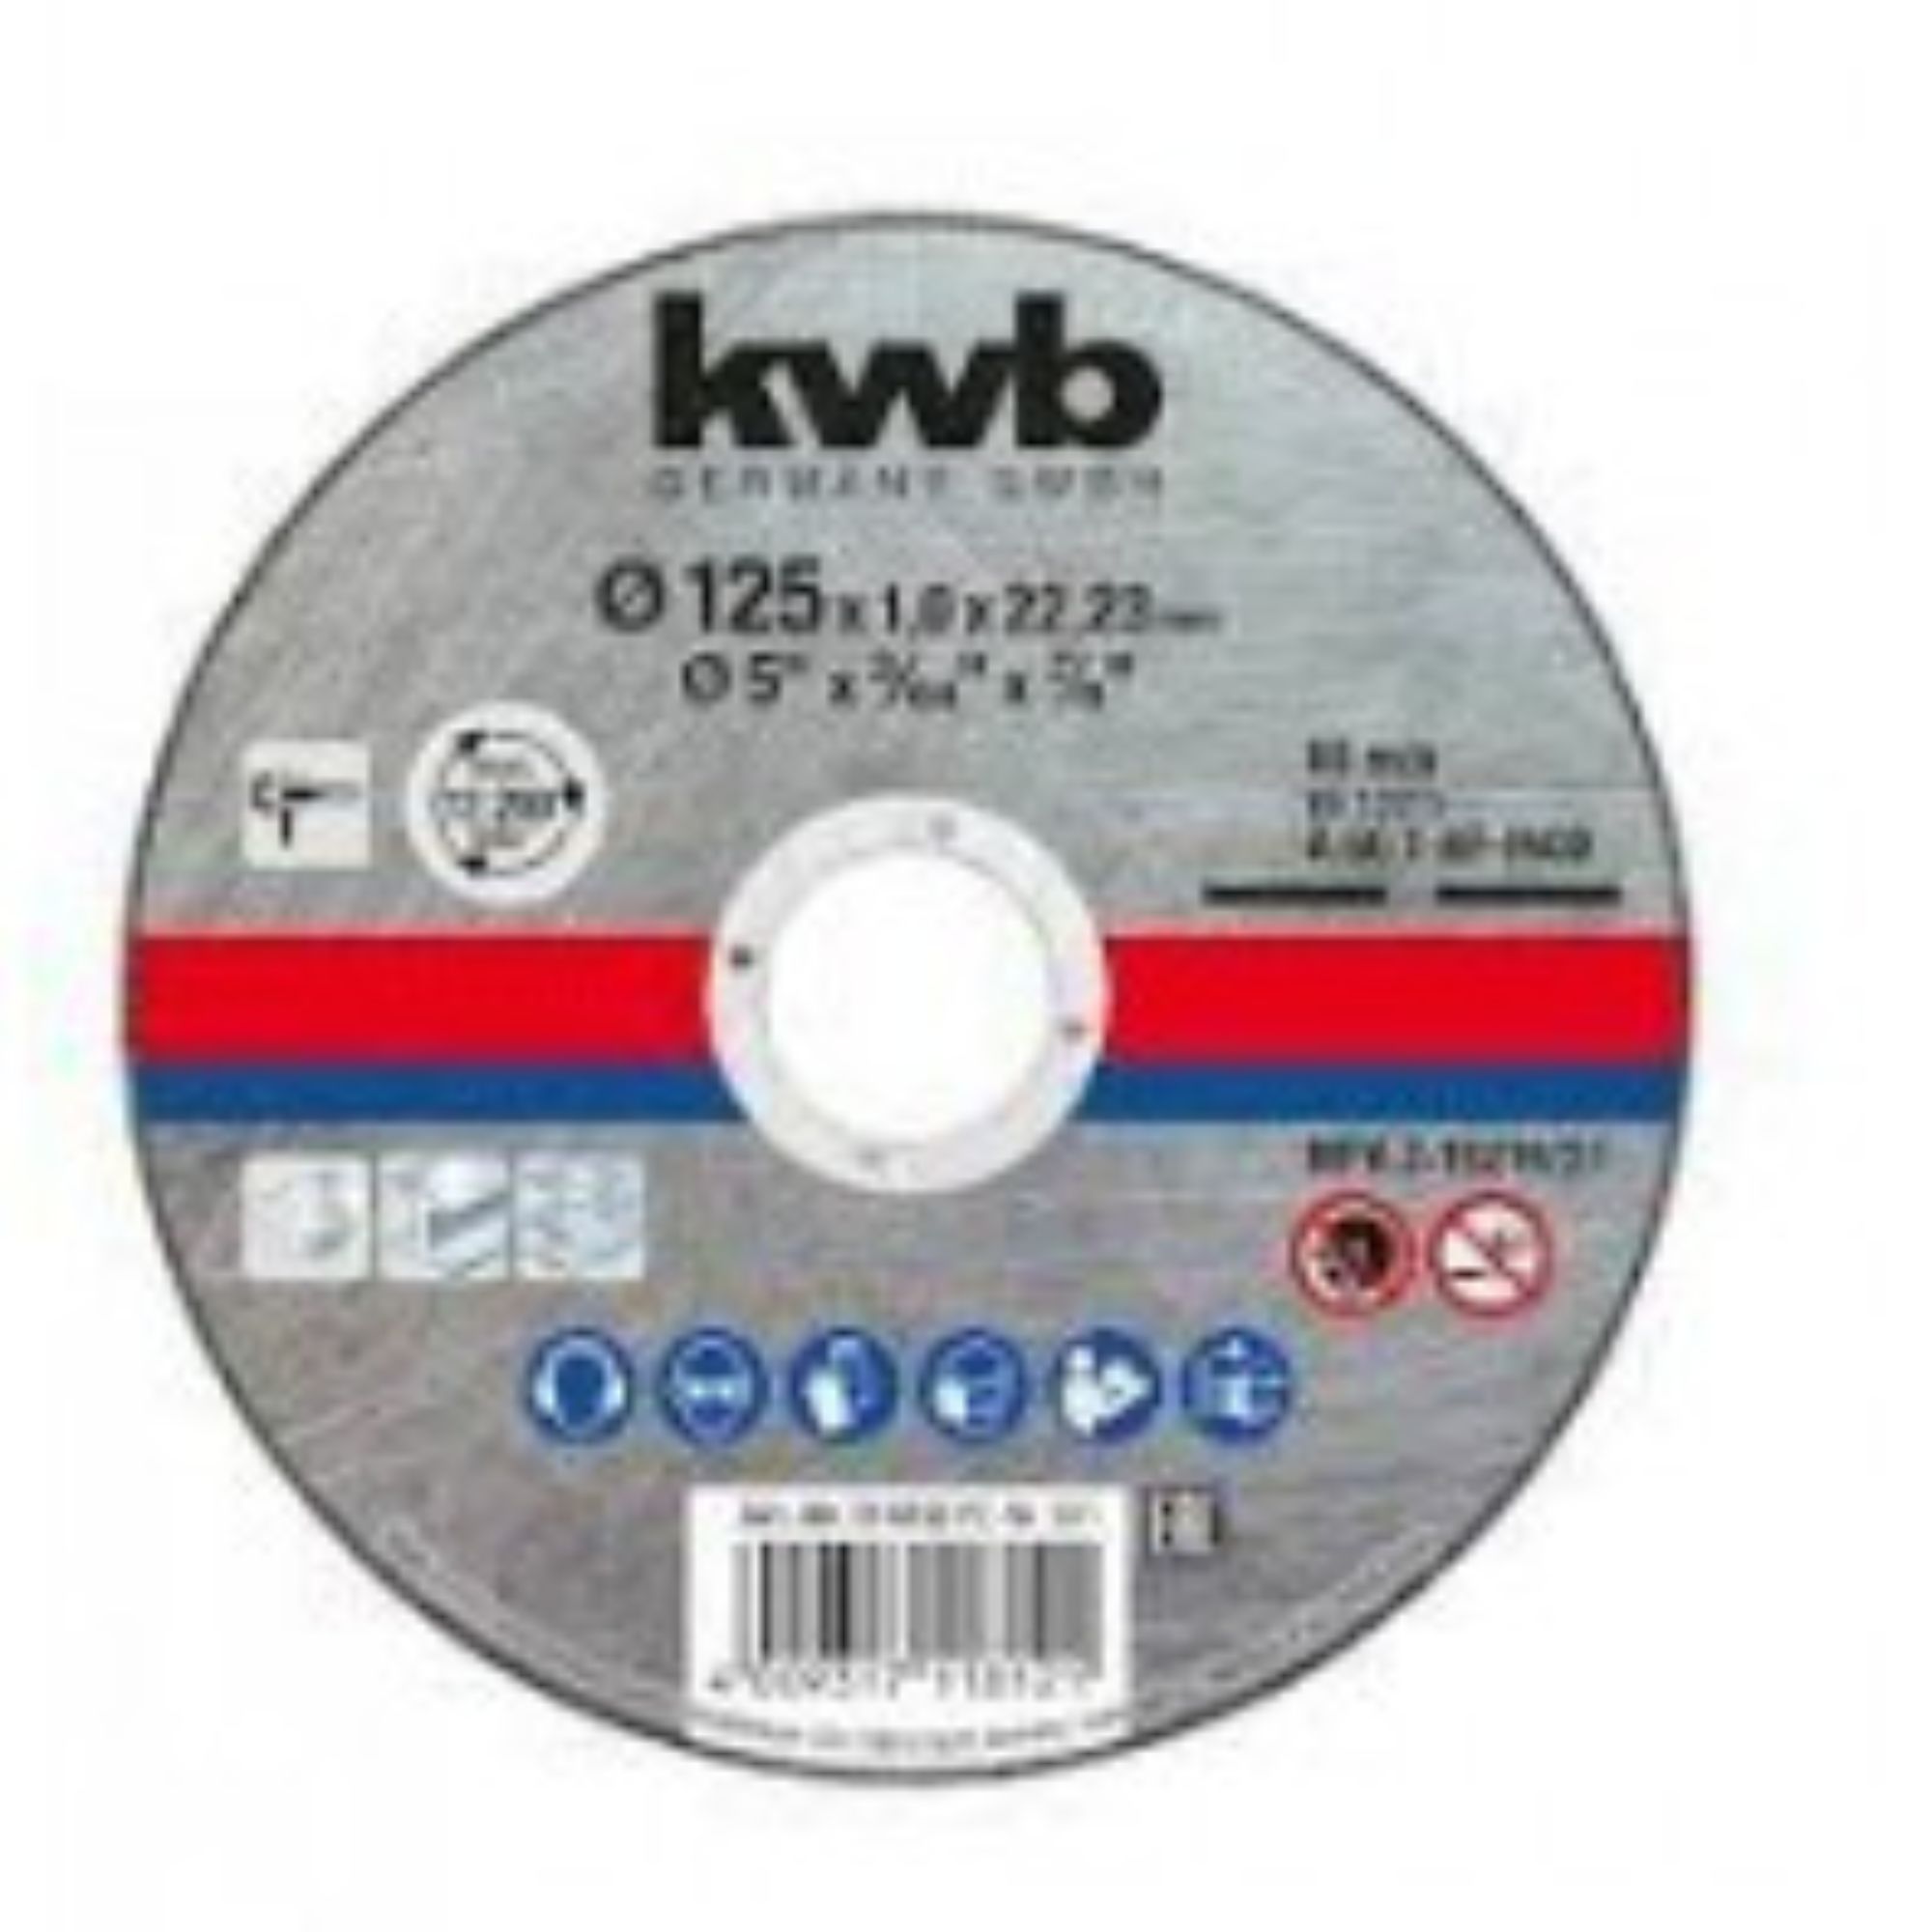 Disco corte inox 125x1 eco kwb